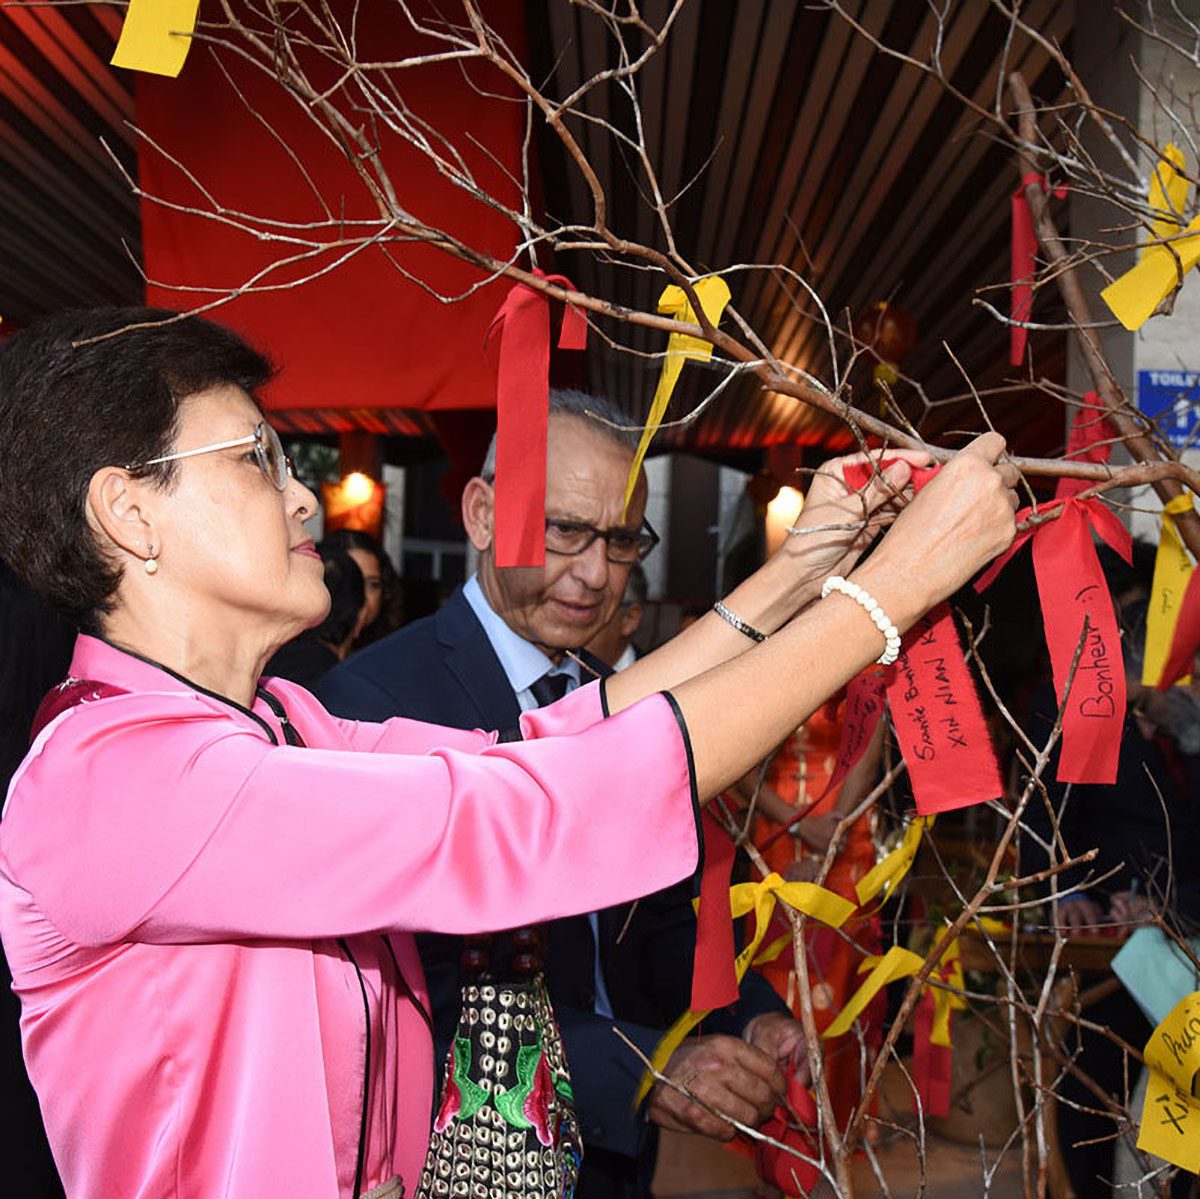 Fête chinoise au Département de La Réunion: photos